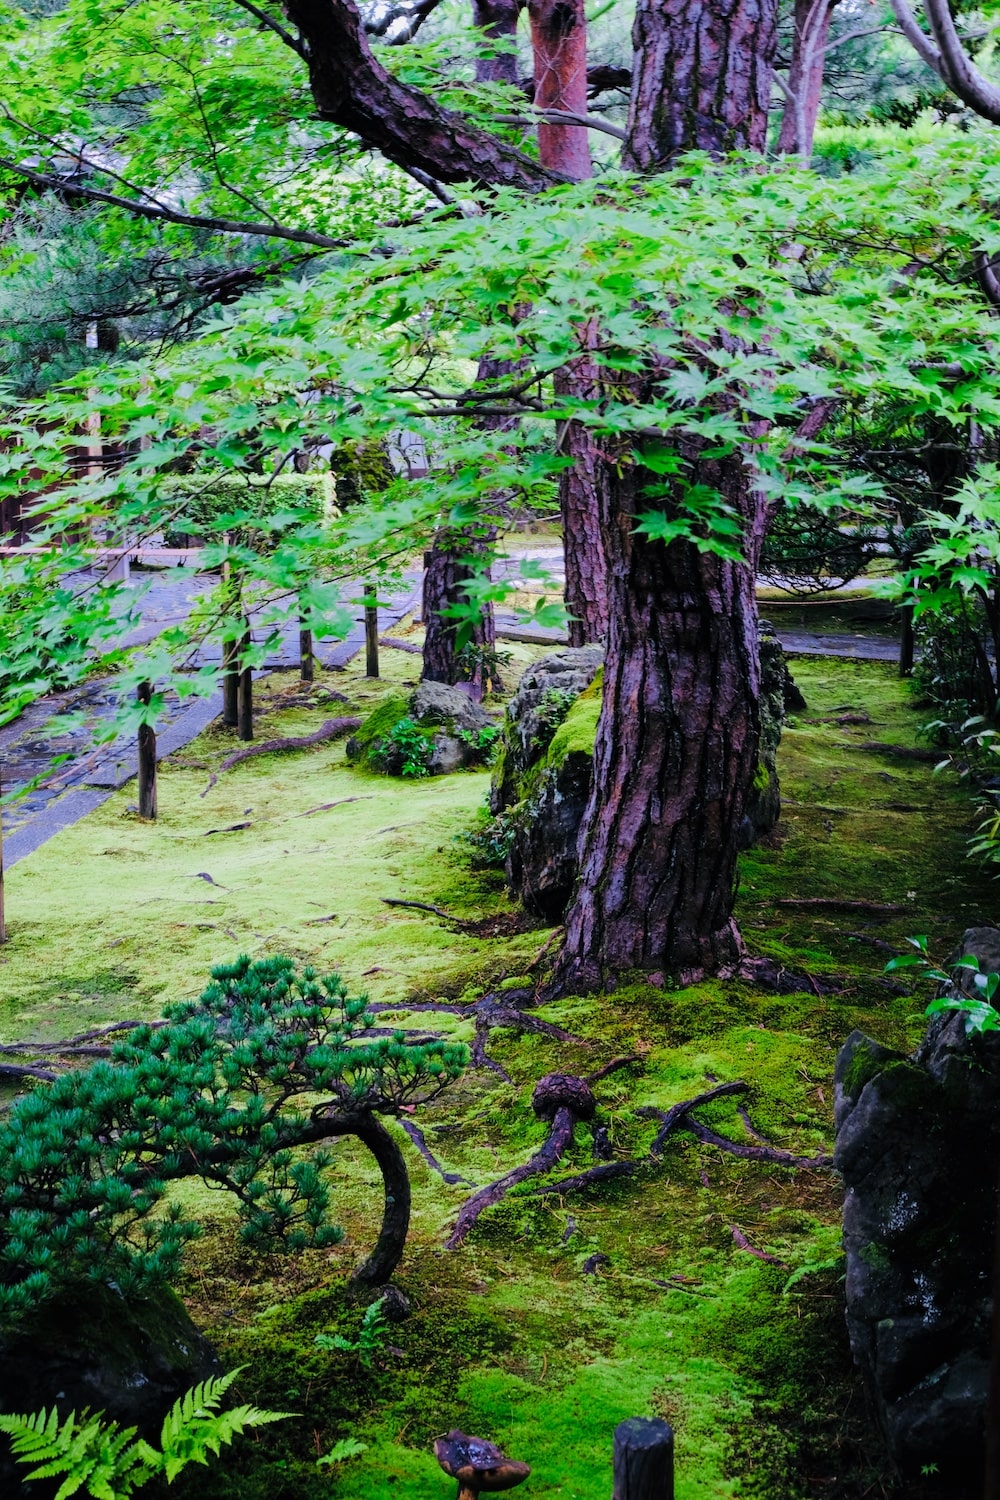 京都盛夏避暑好去處：妙心寺日本庭園「退藏院」、「桂春院」